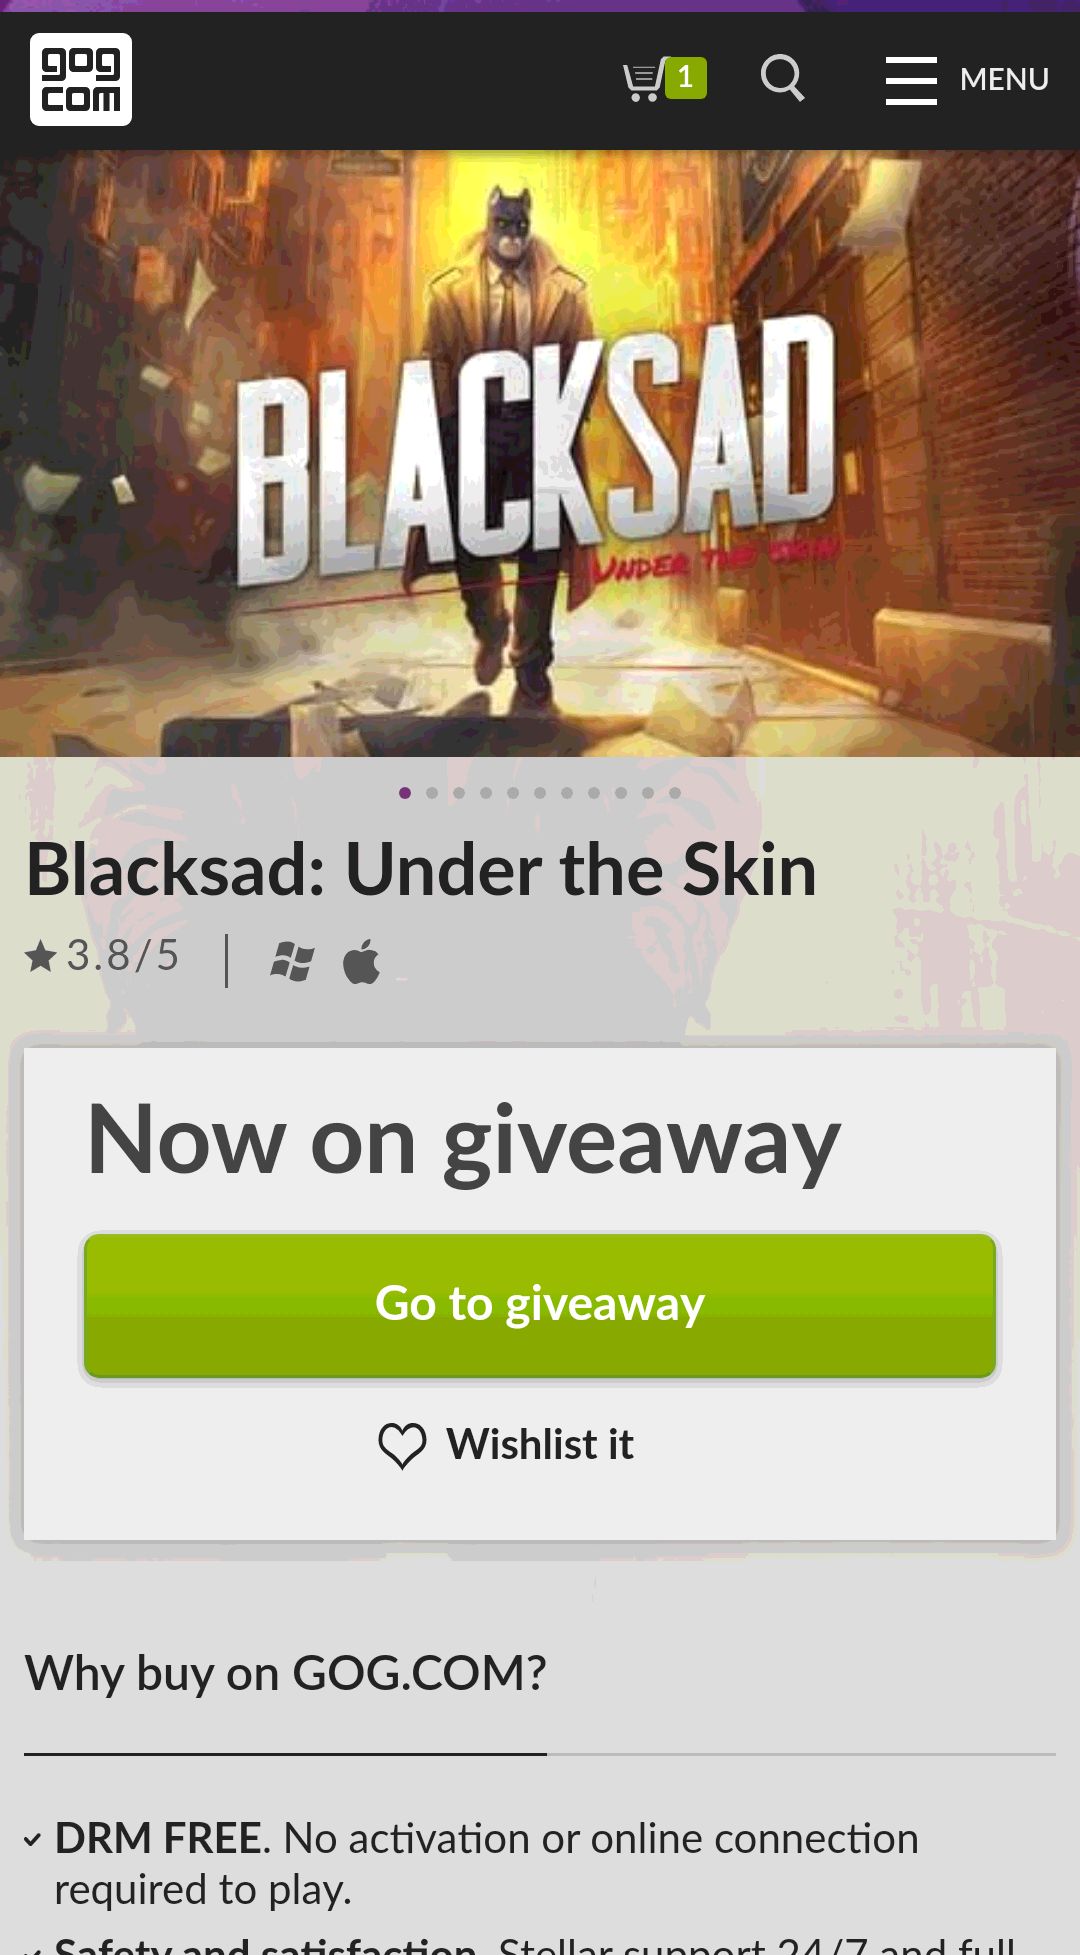 Blacksad: Under the Skin on GOG.com喜加一